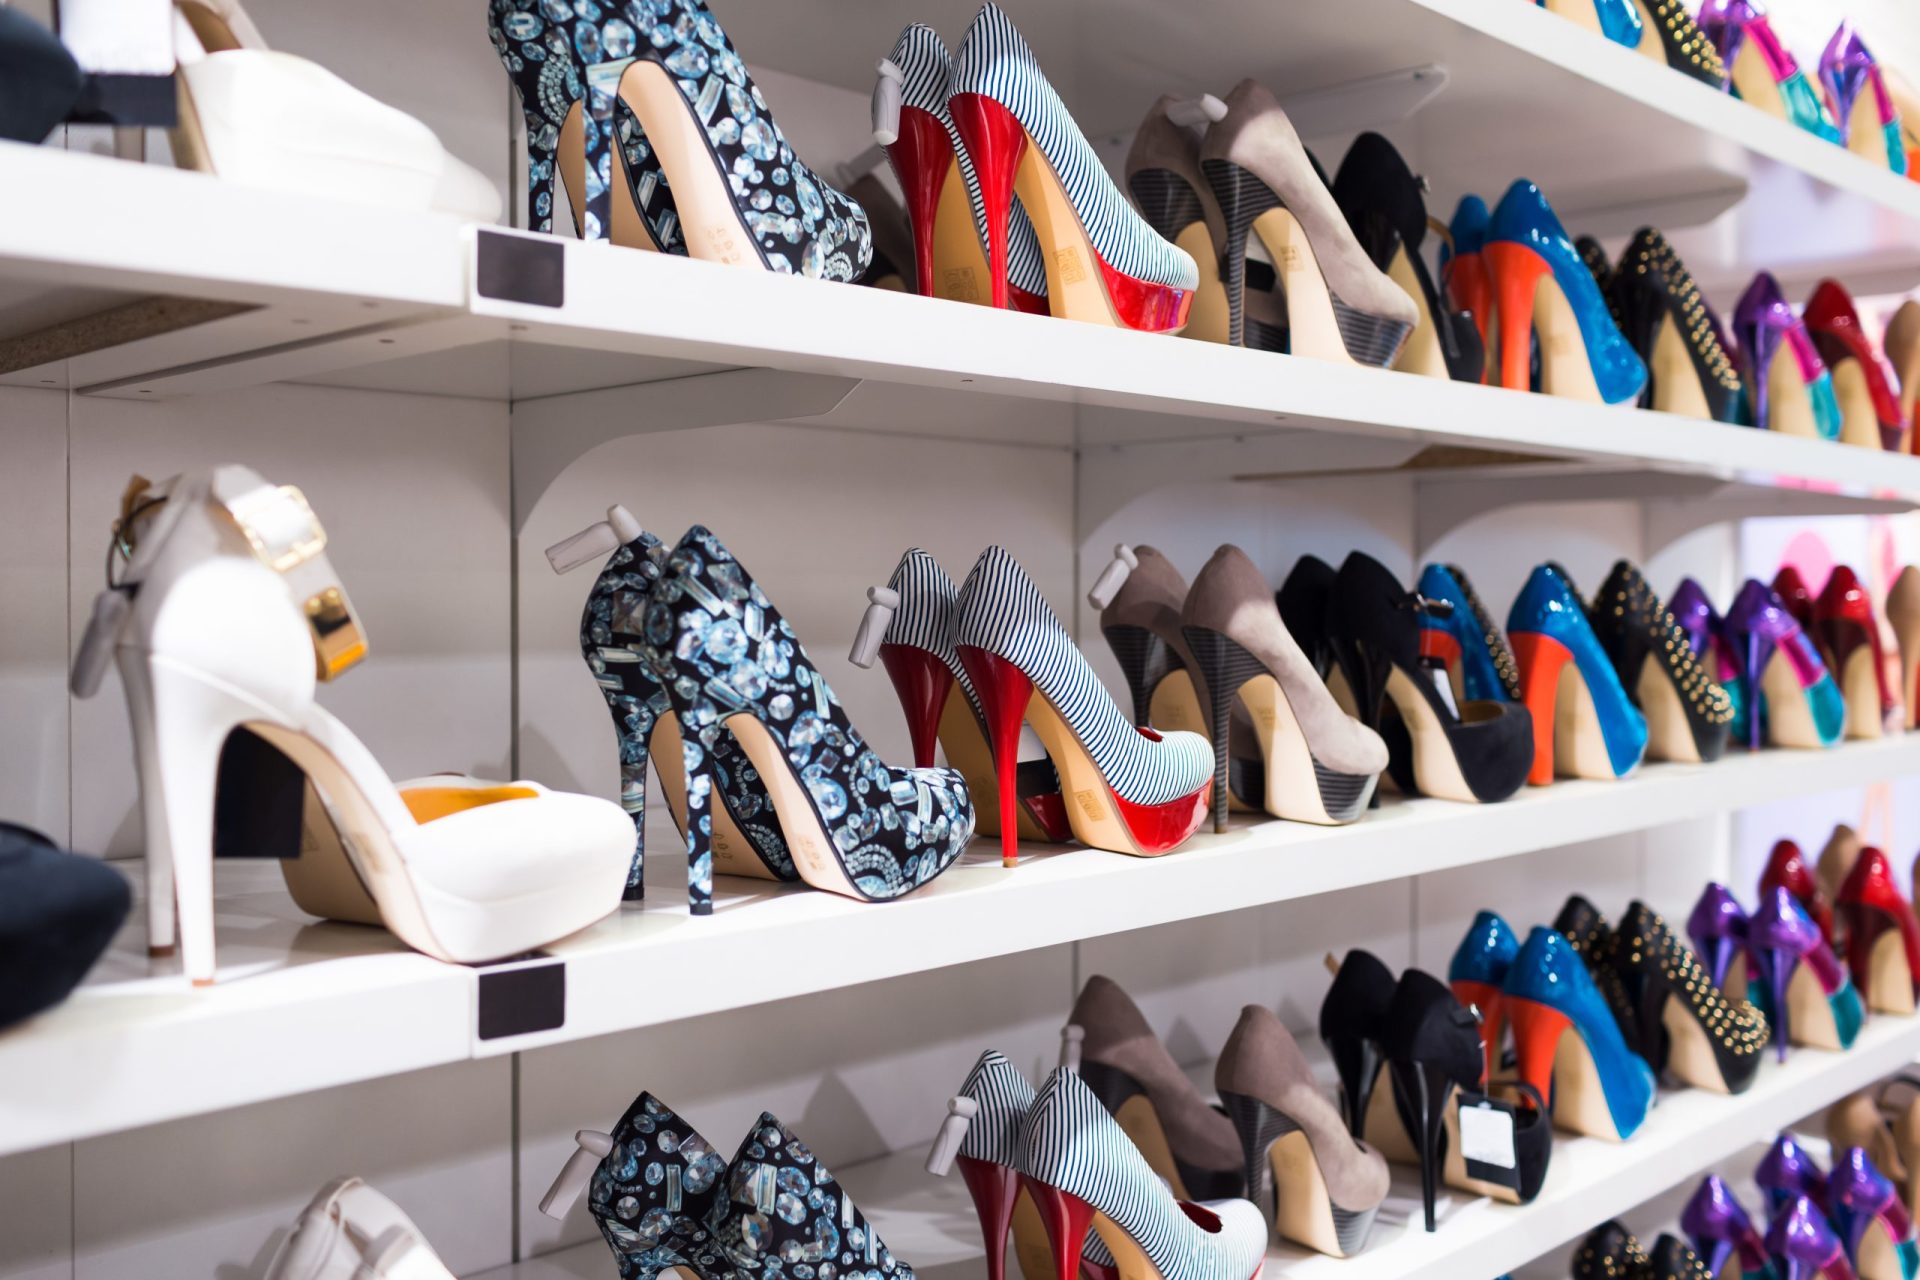 Maior feira de calçado arranca hoje em Milão com recorde de empresas portuguesas